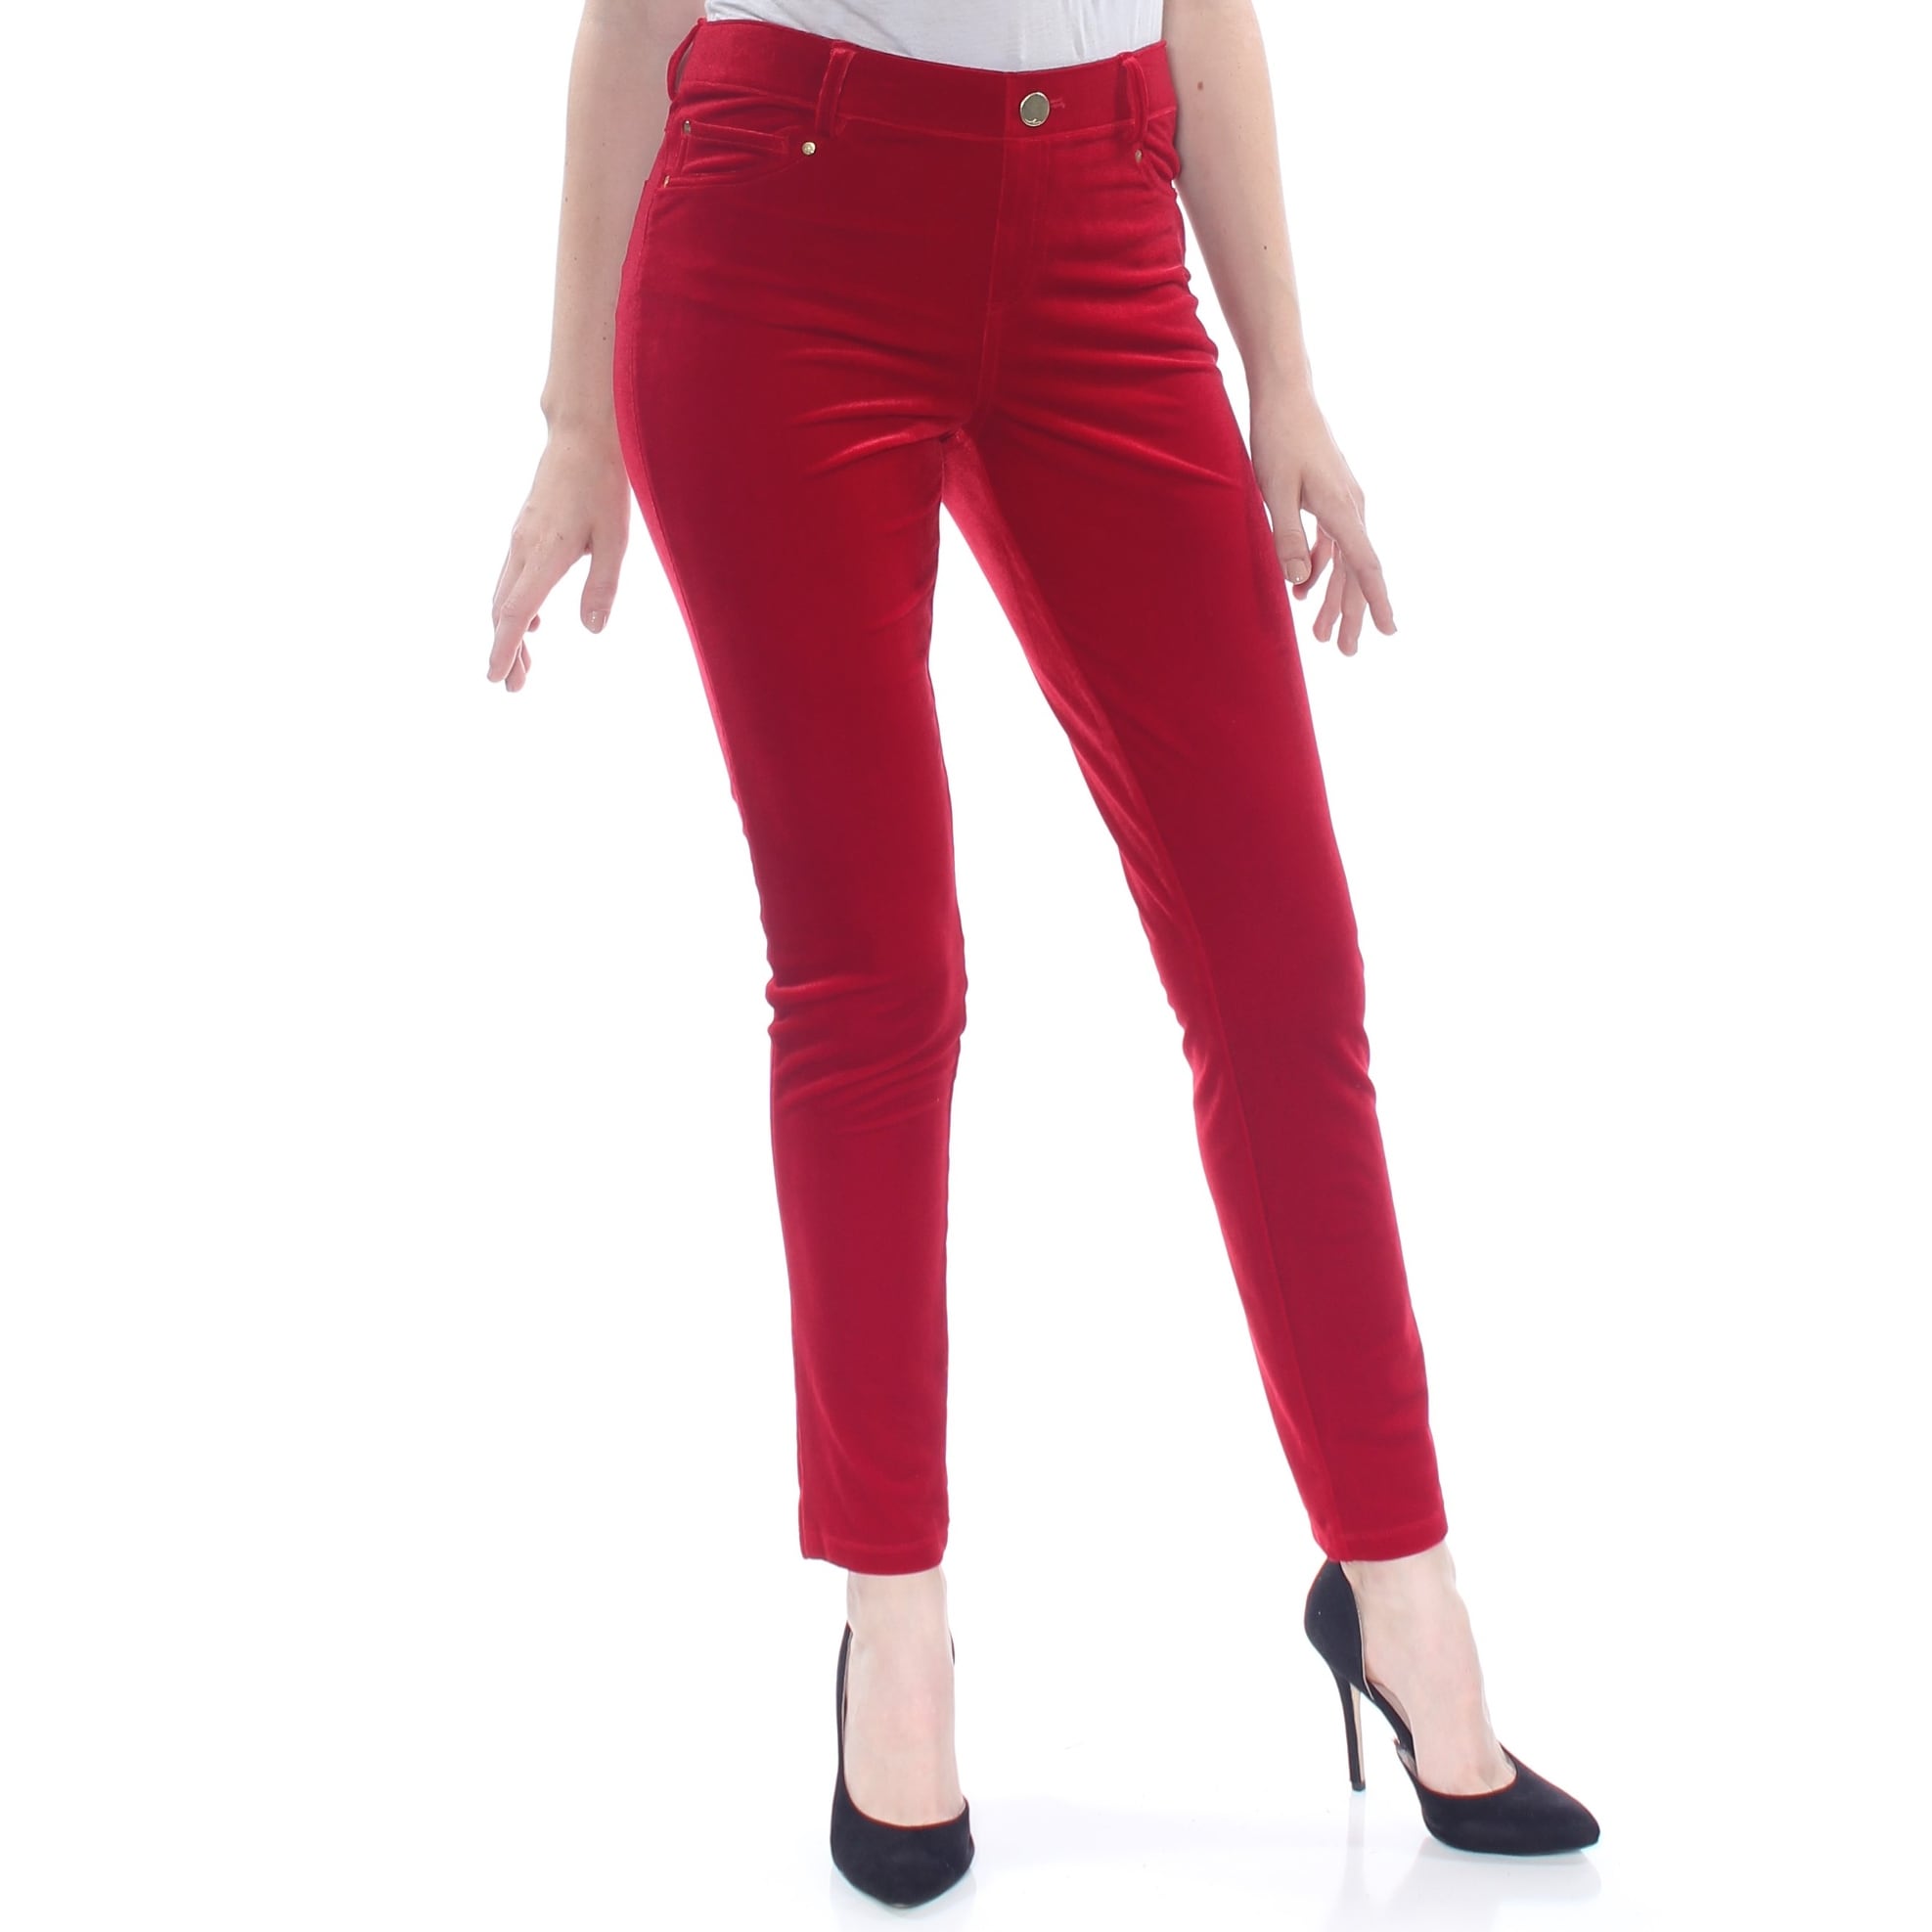 red velvet skinny pants